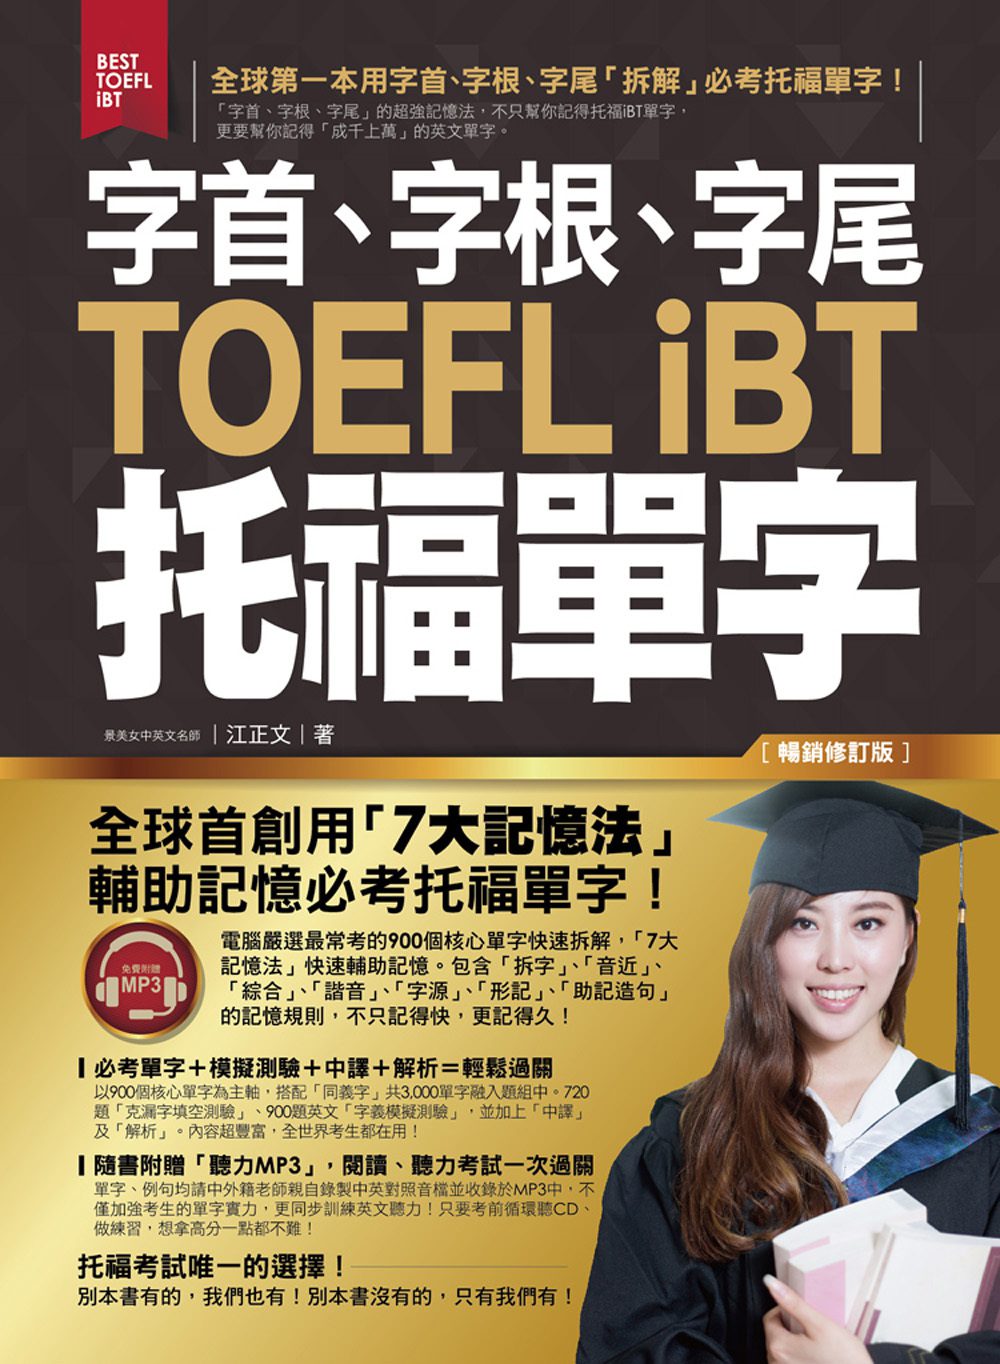 字首、字根、字尾TOEFL